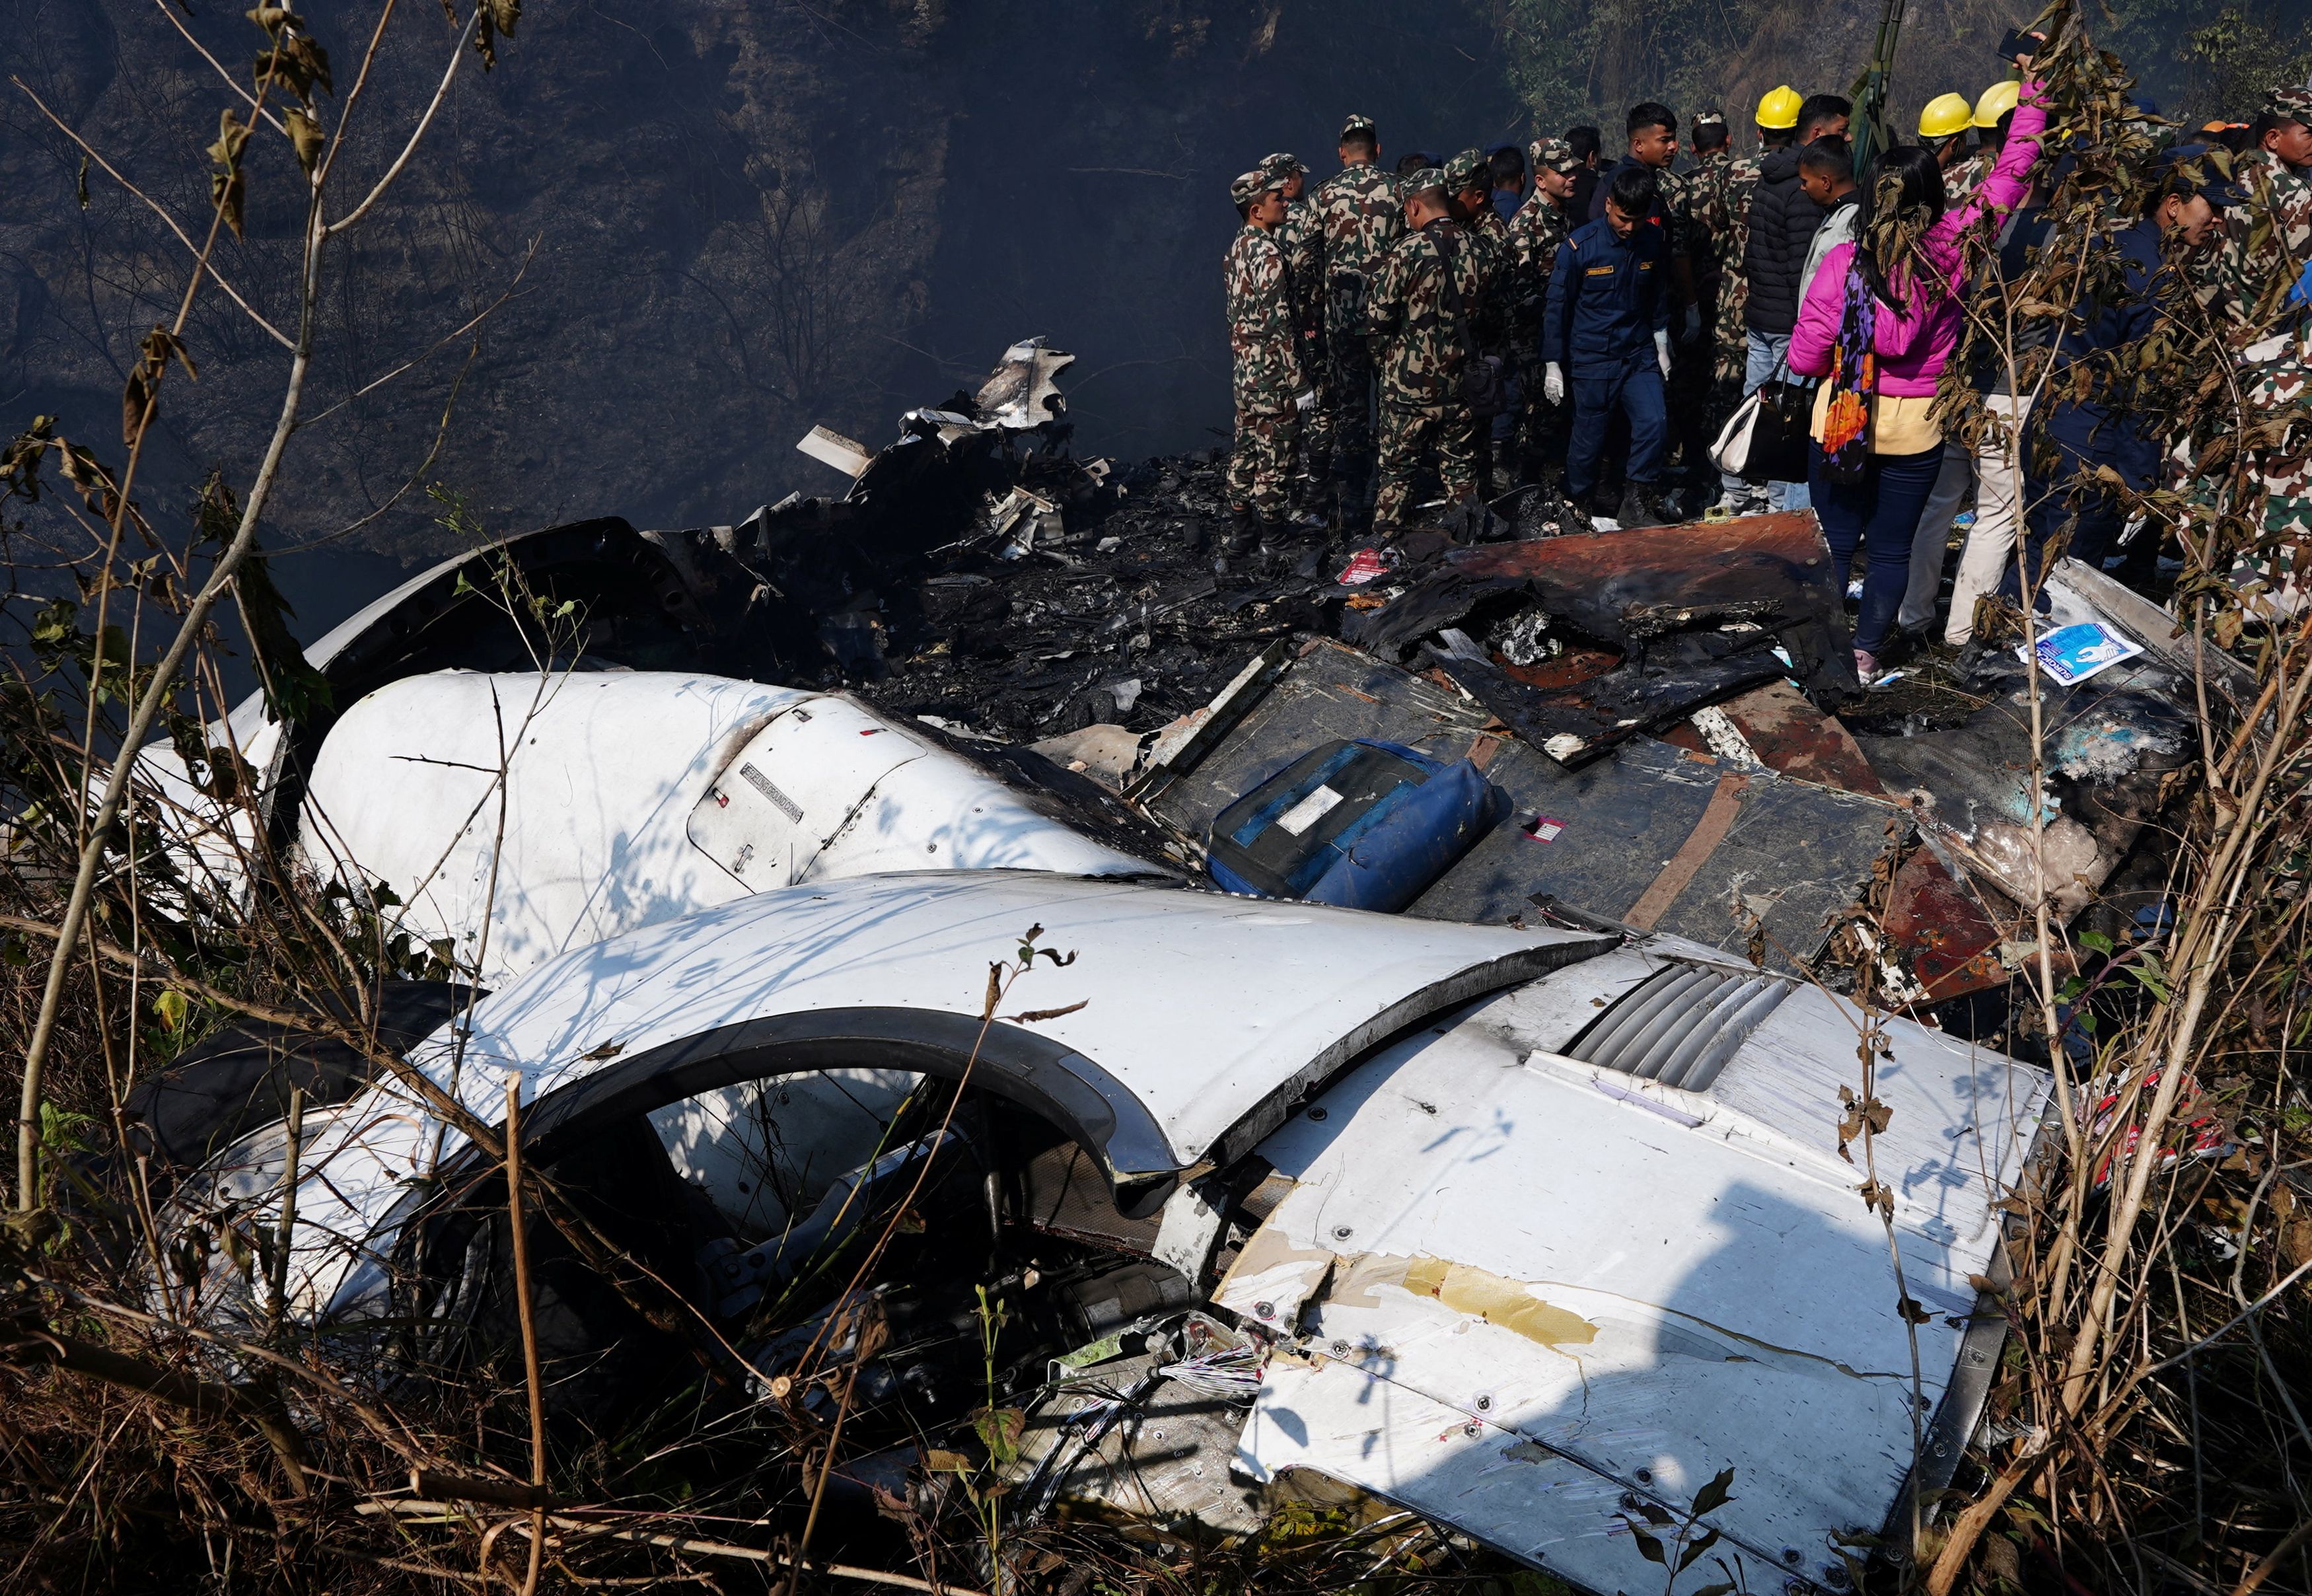 Νεπάλ: Αυξάνεται ο αριθμός των νεκρών από την αεροπορική τραγωδία - Εικόνες φρίκης